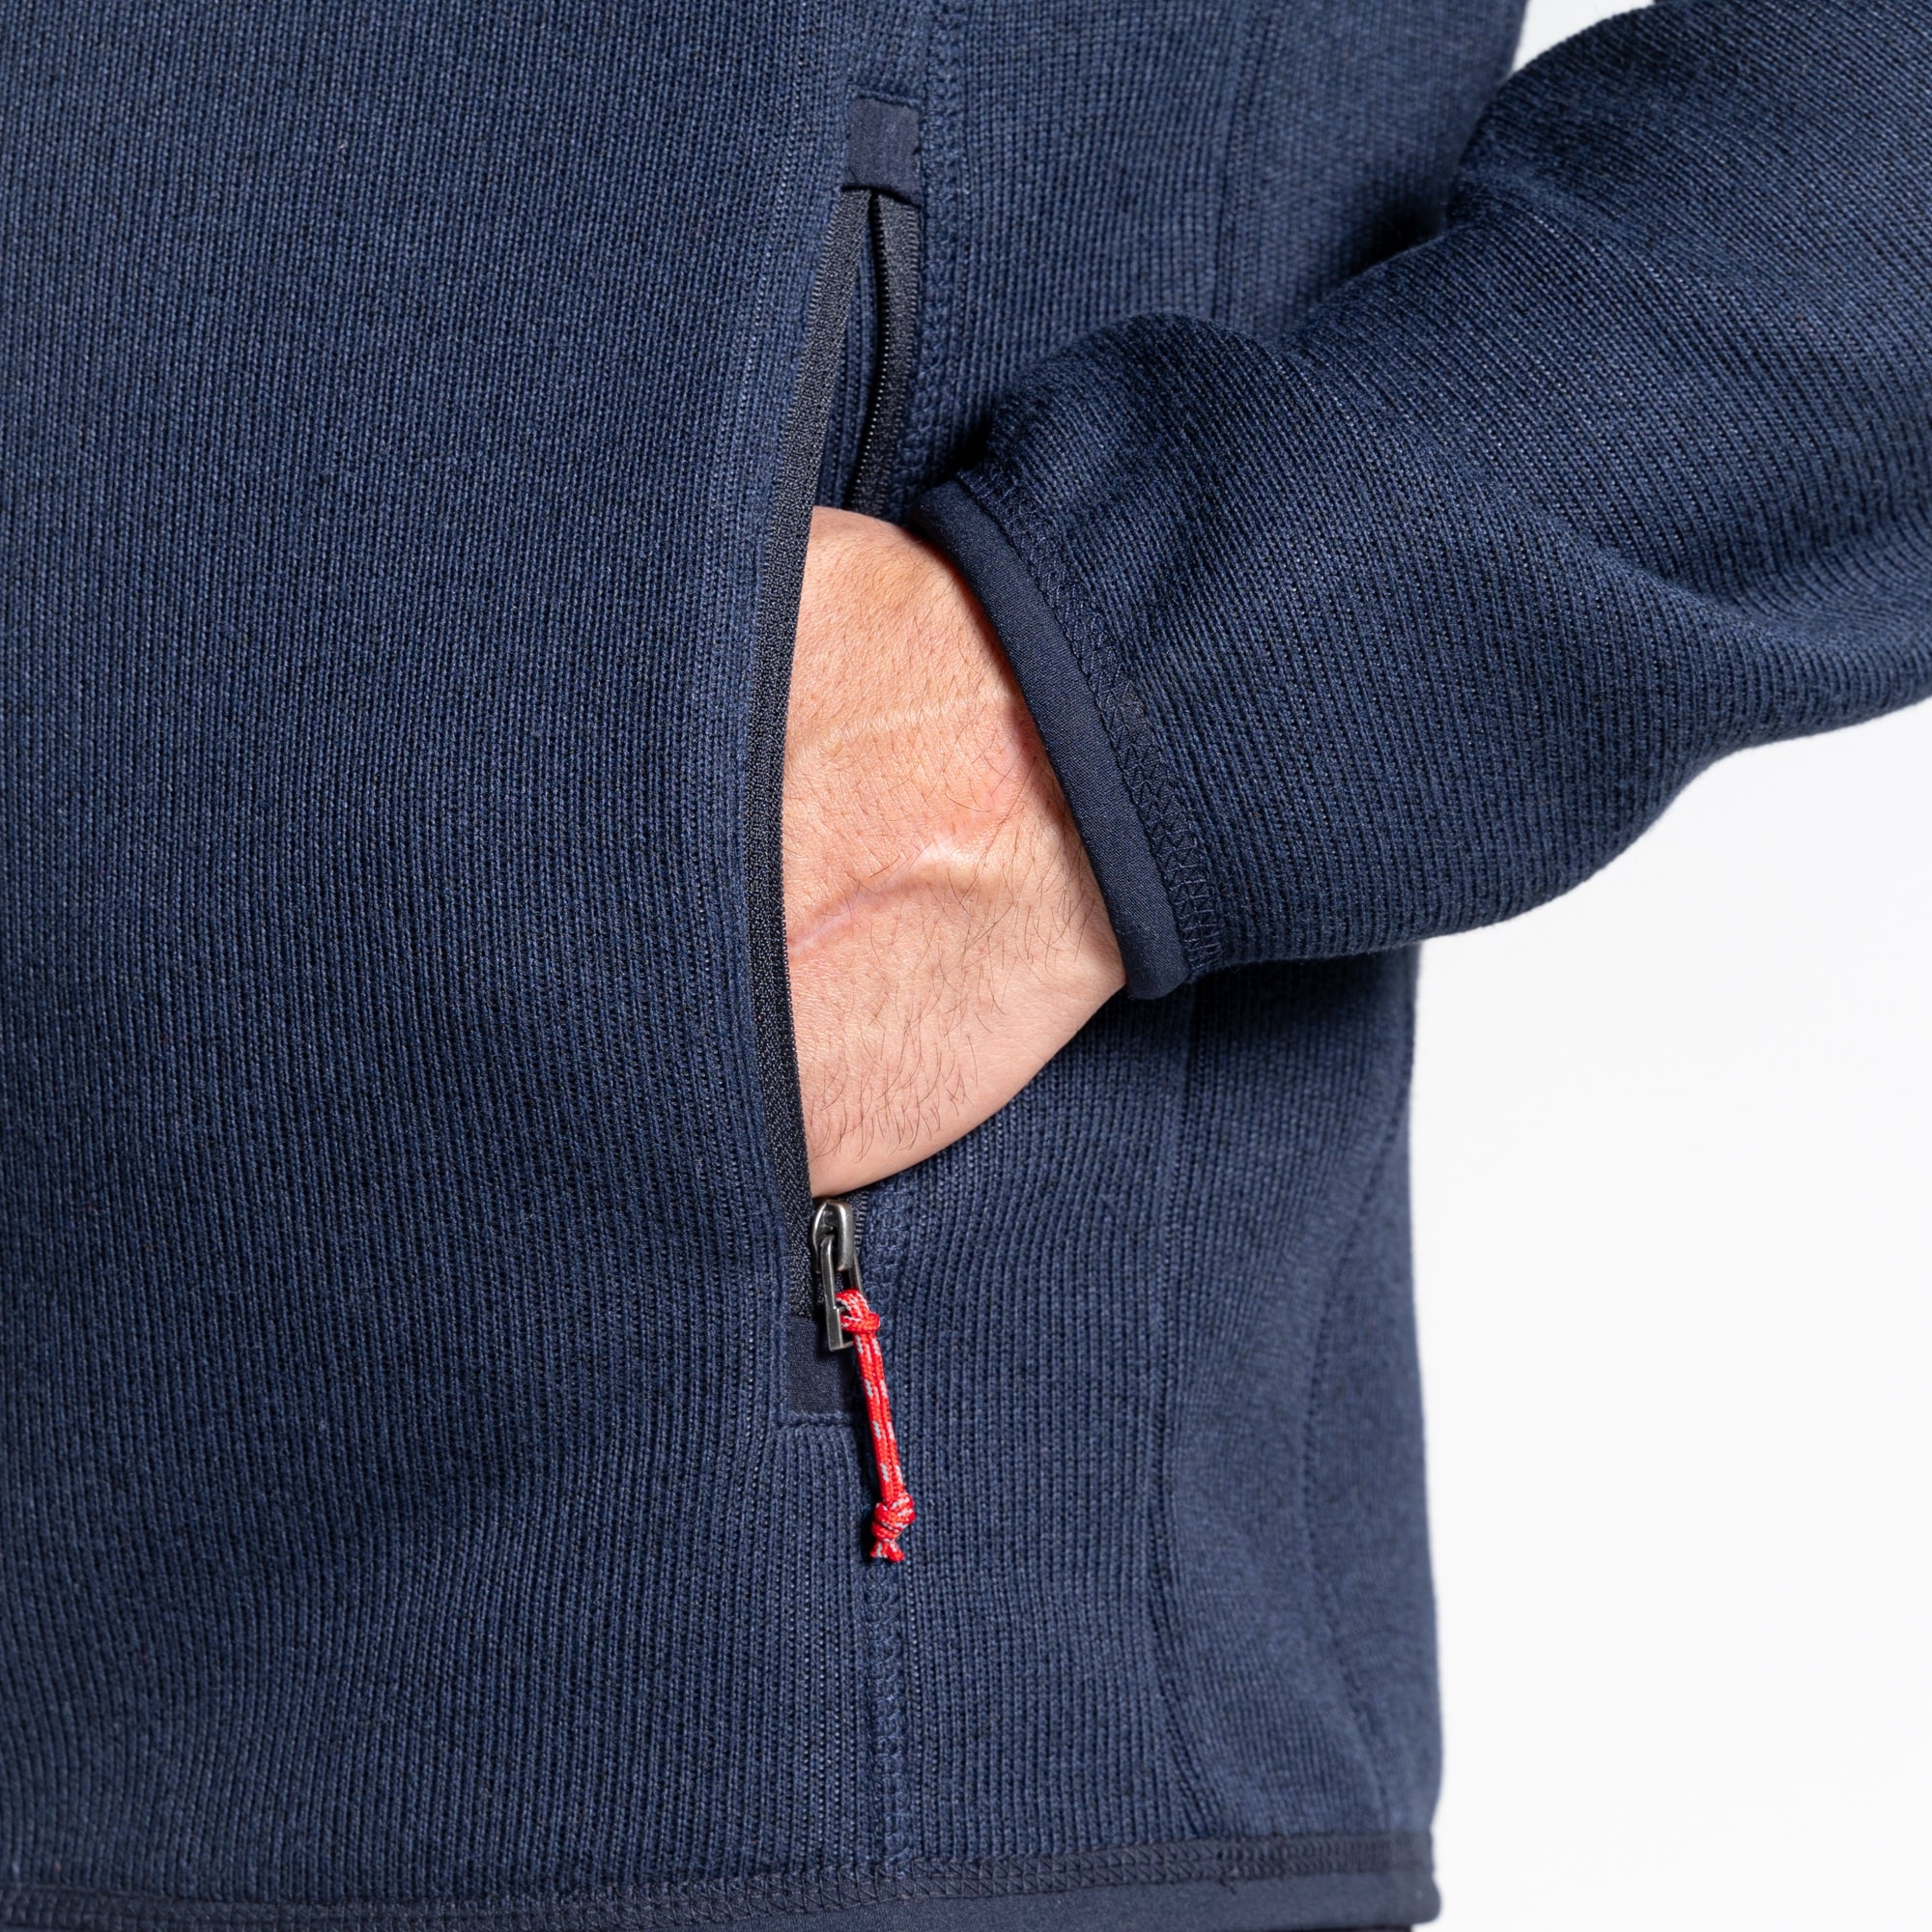 Men's Torney Fleece Jacket | Blue Navy Marl